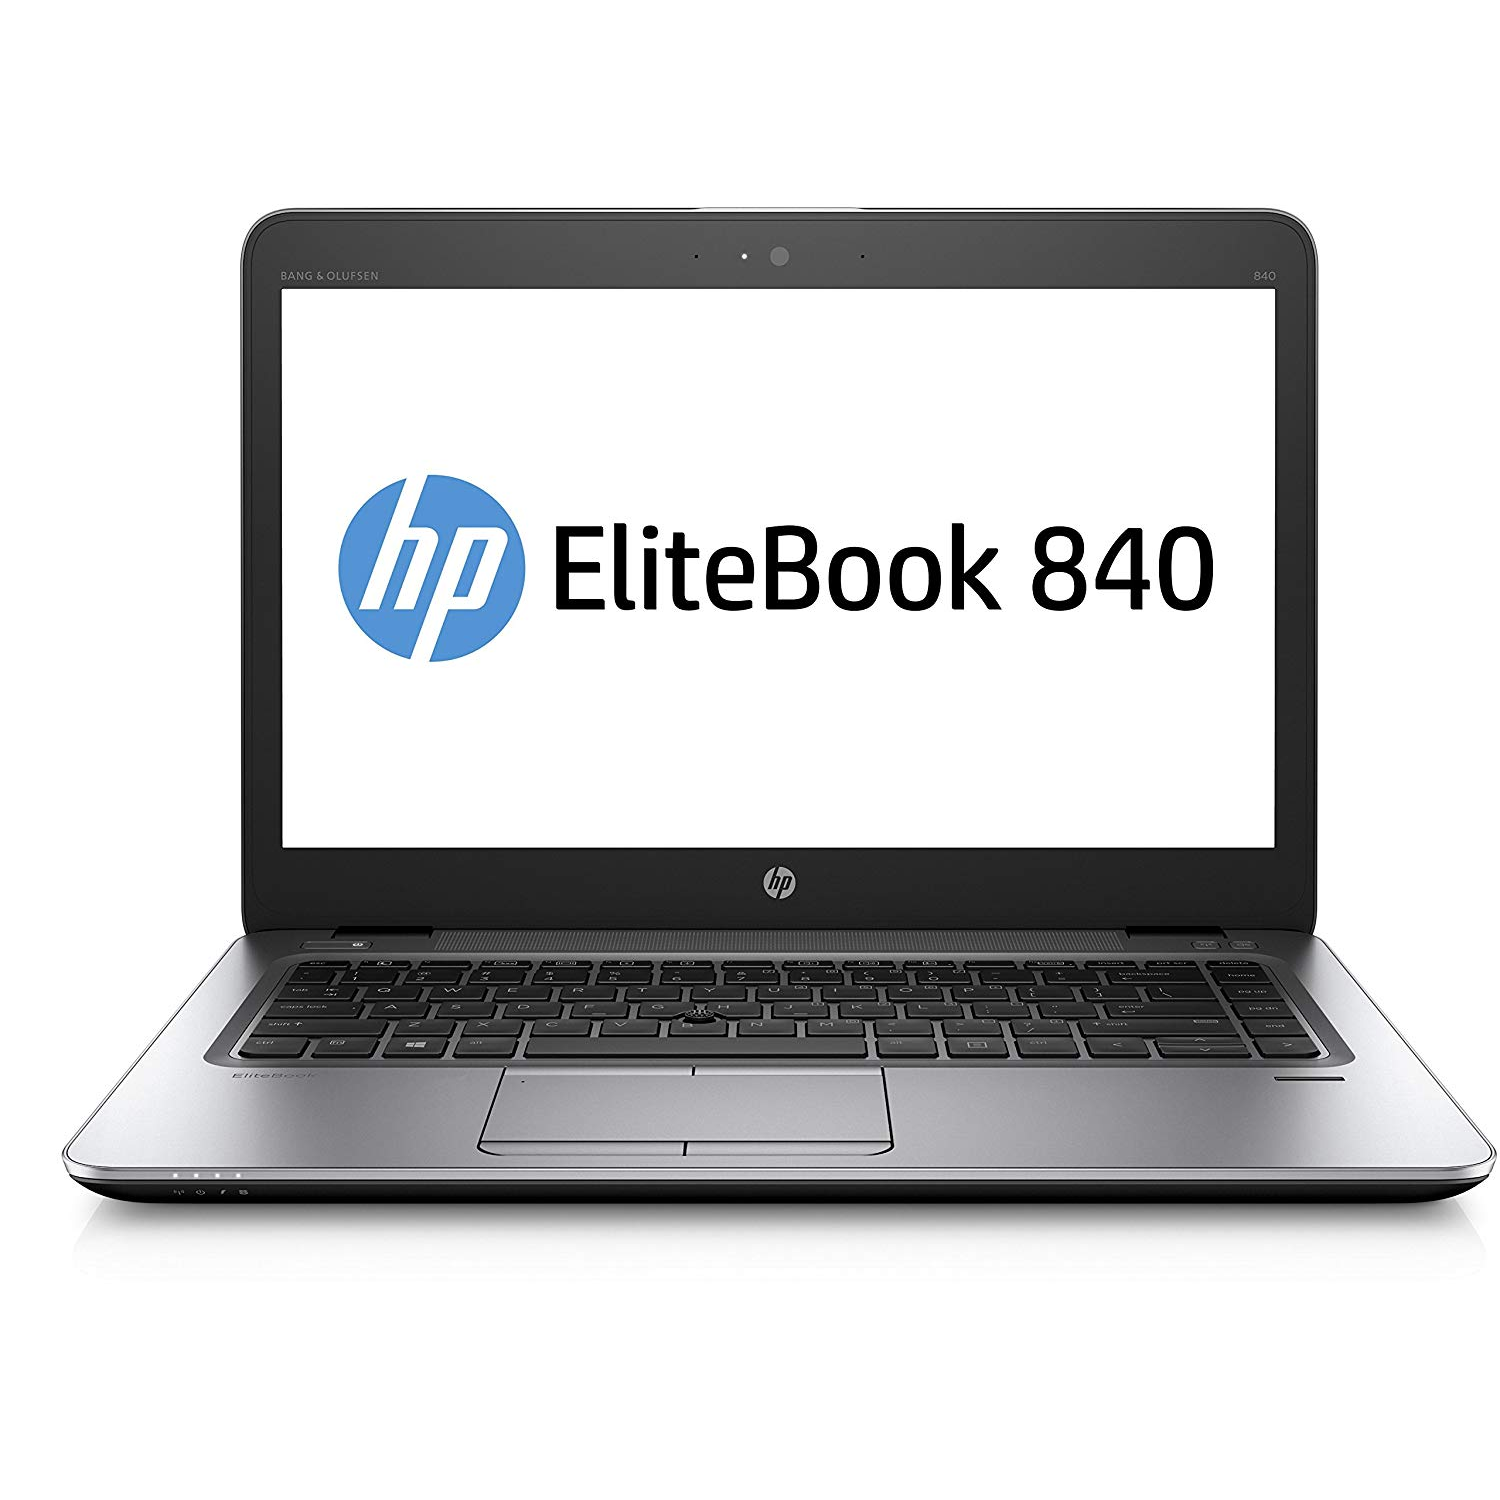 Refurbished (Good) - HP EliteBook 840 G3 i5-6300U, 16GB, 256GB SSD+500GB HDD, 14"HD (1366x768), WEBCAM, Intel HD Graphics 520, BT, FPR